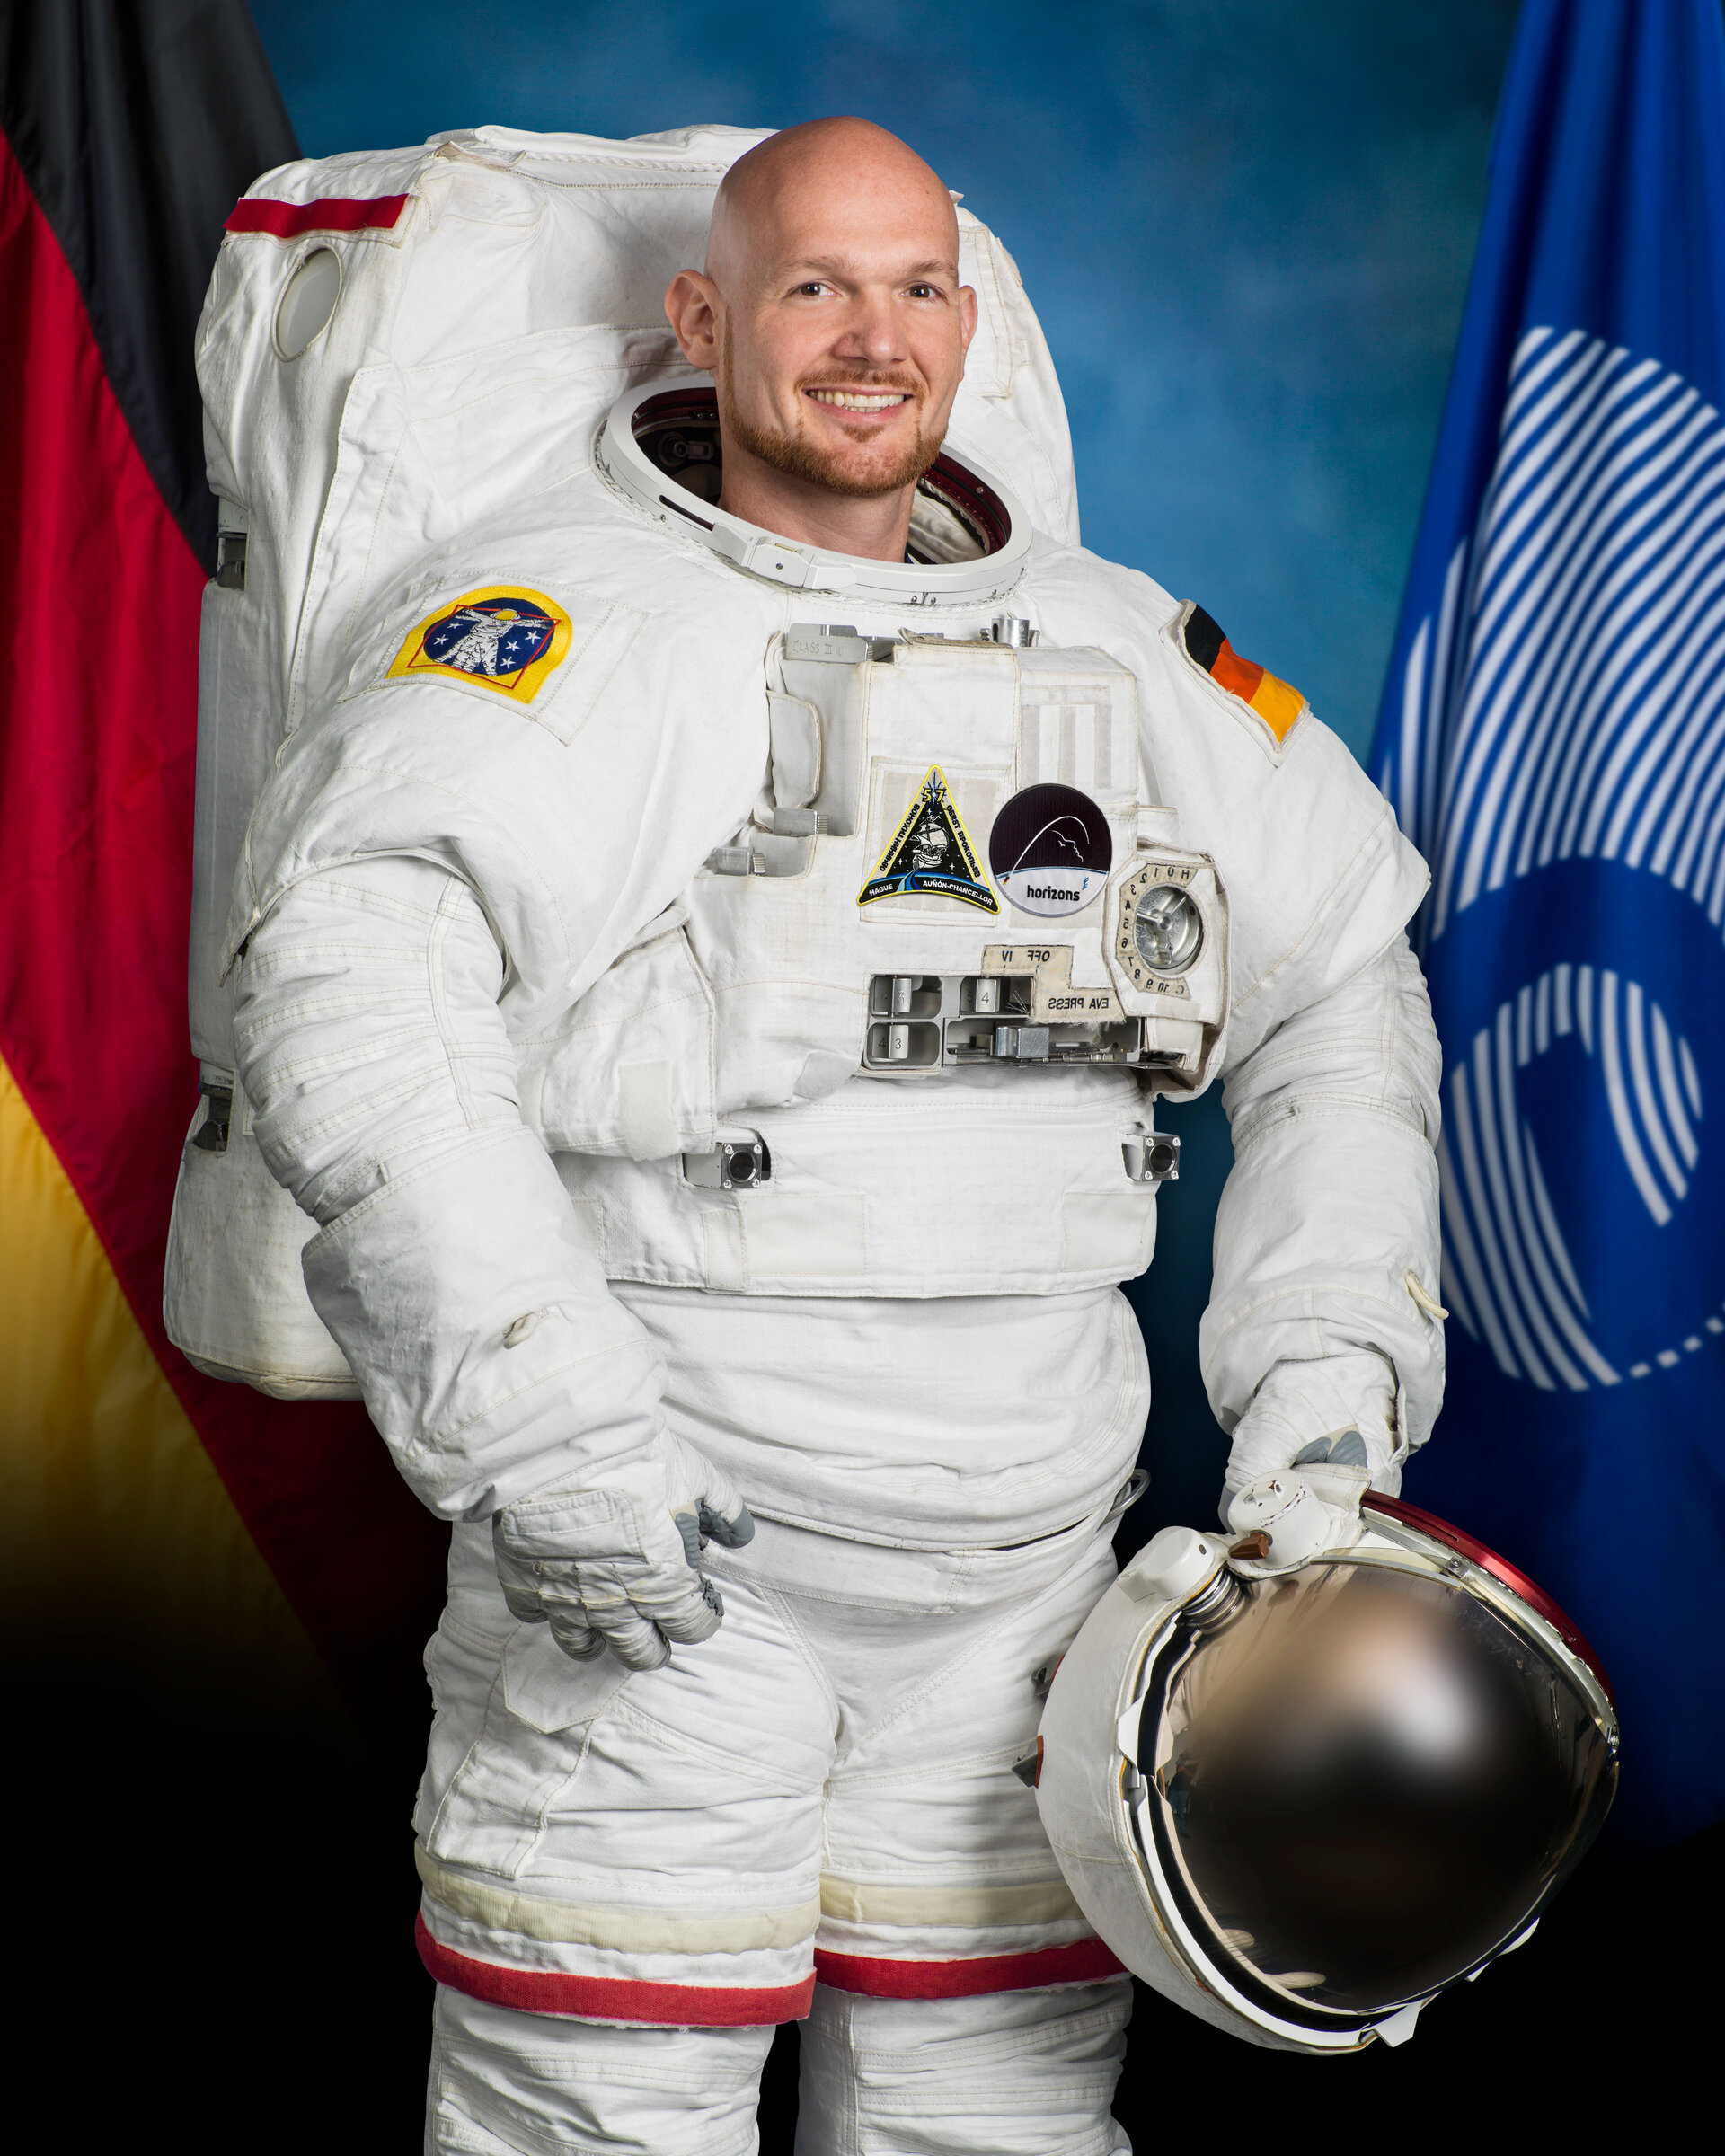 Alexander Gerst wearing NASA's EMU spacesuit